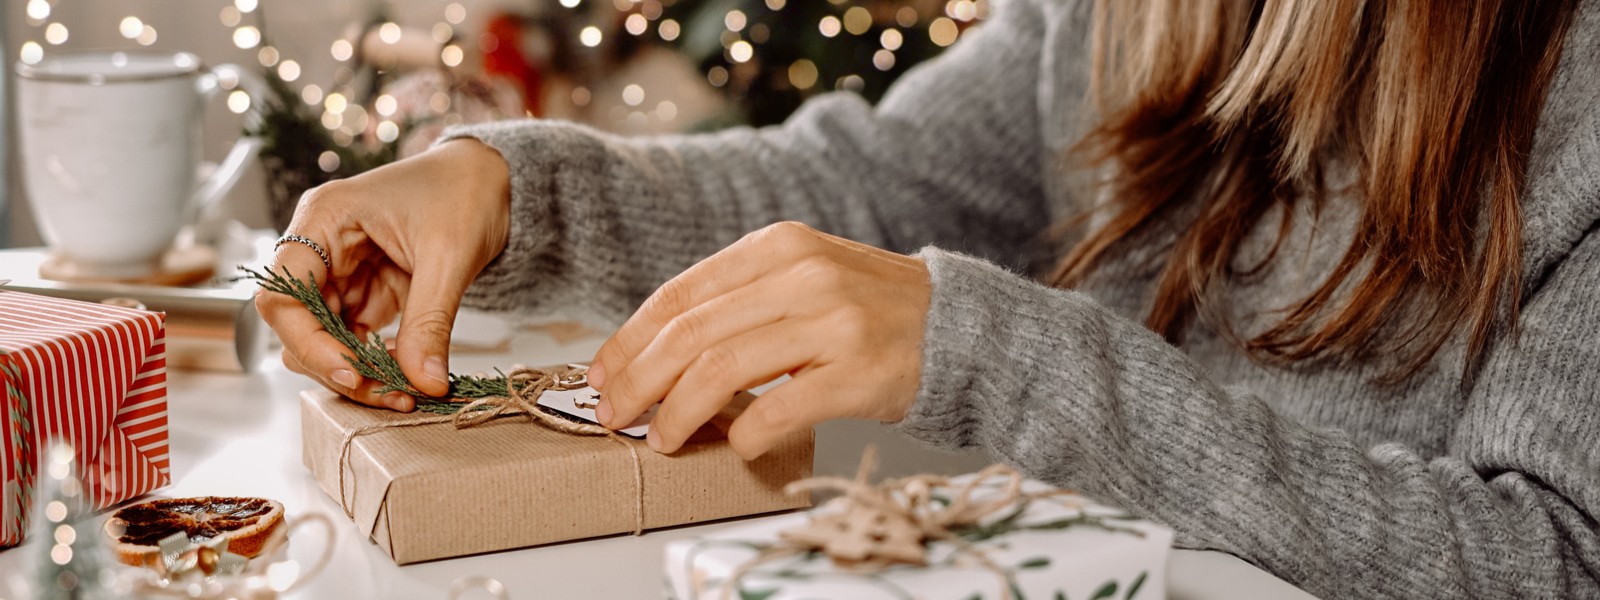 Veľký sprievodca balením darčekov, alebo ako originálne zabaliť darčeky na Vianoce?